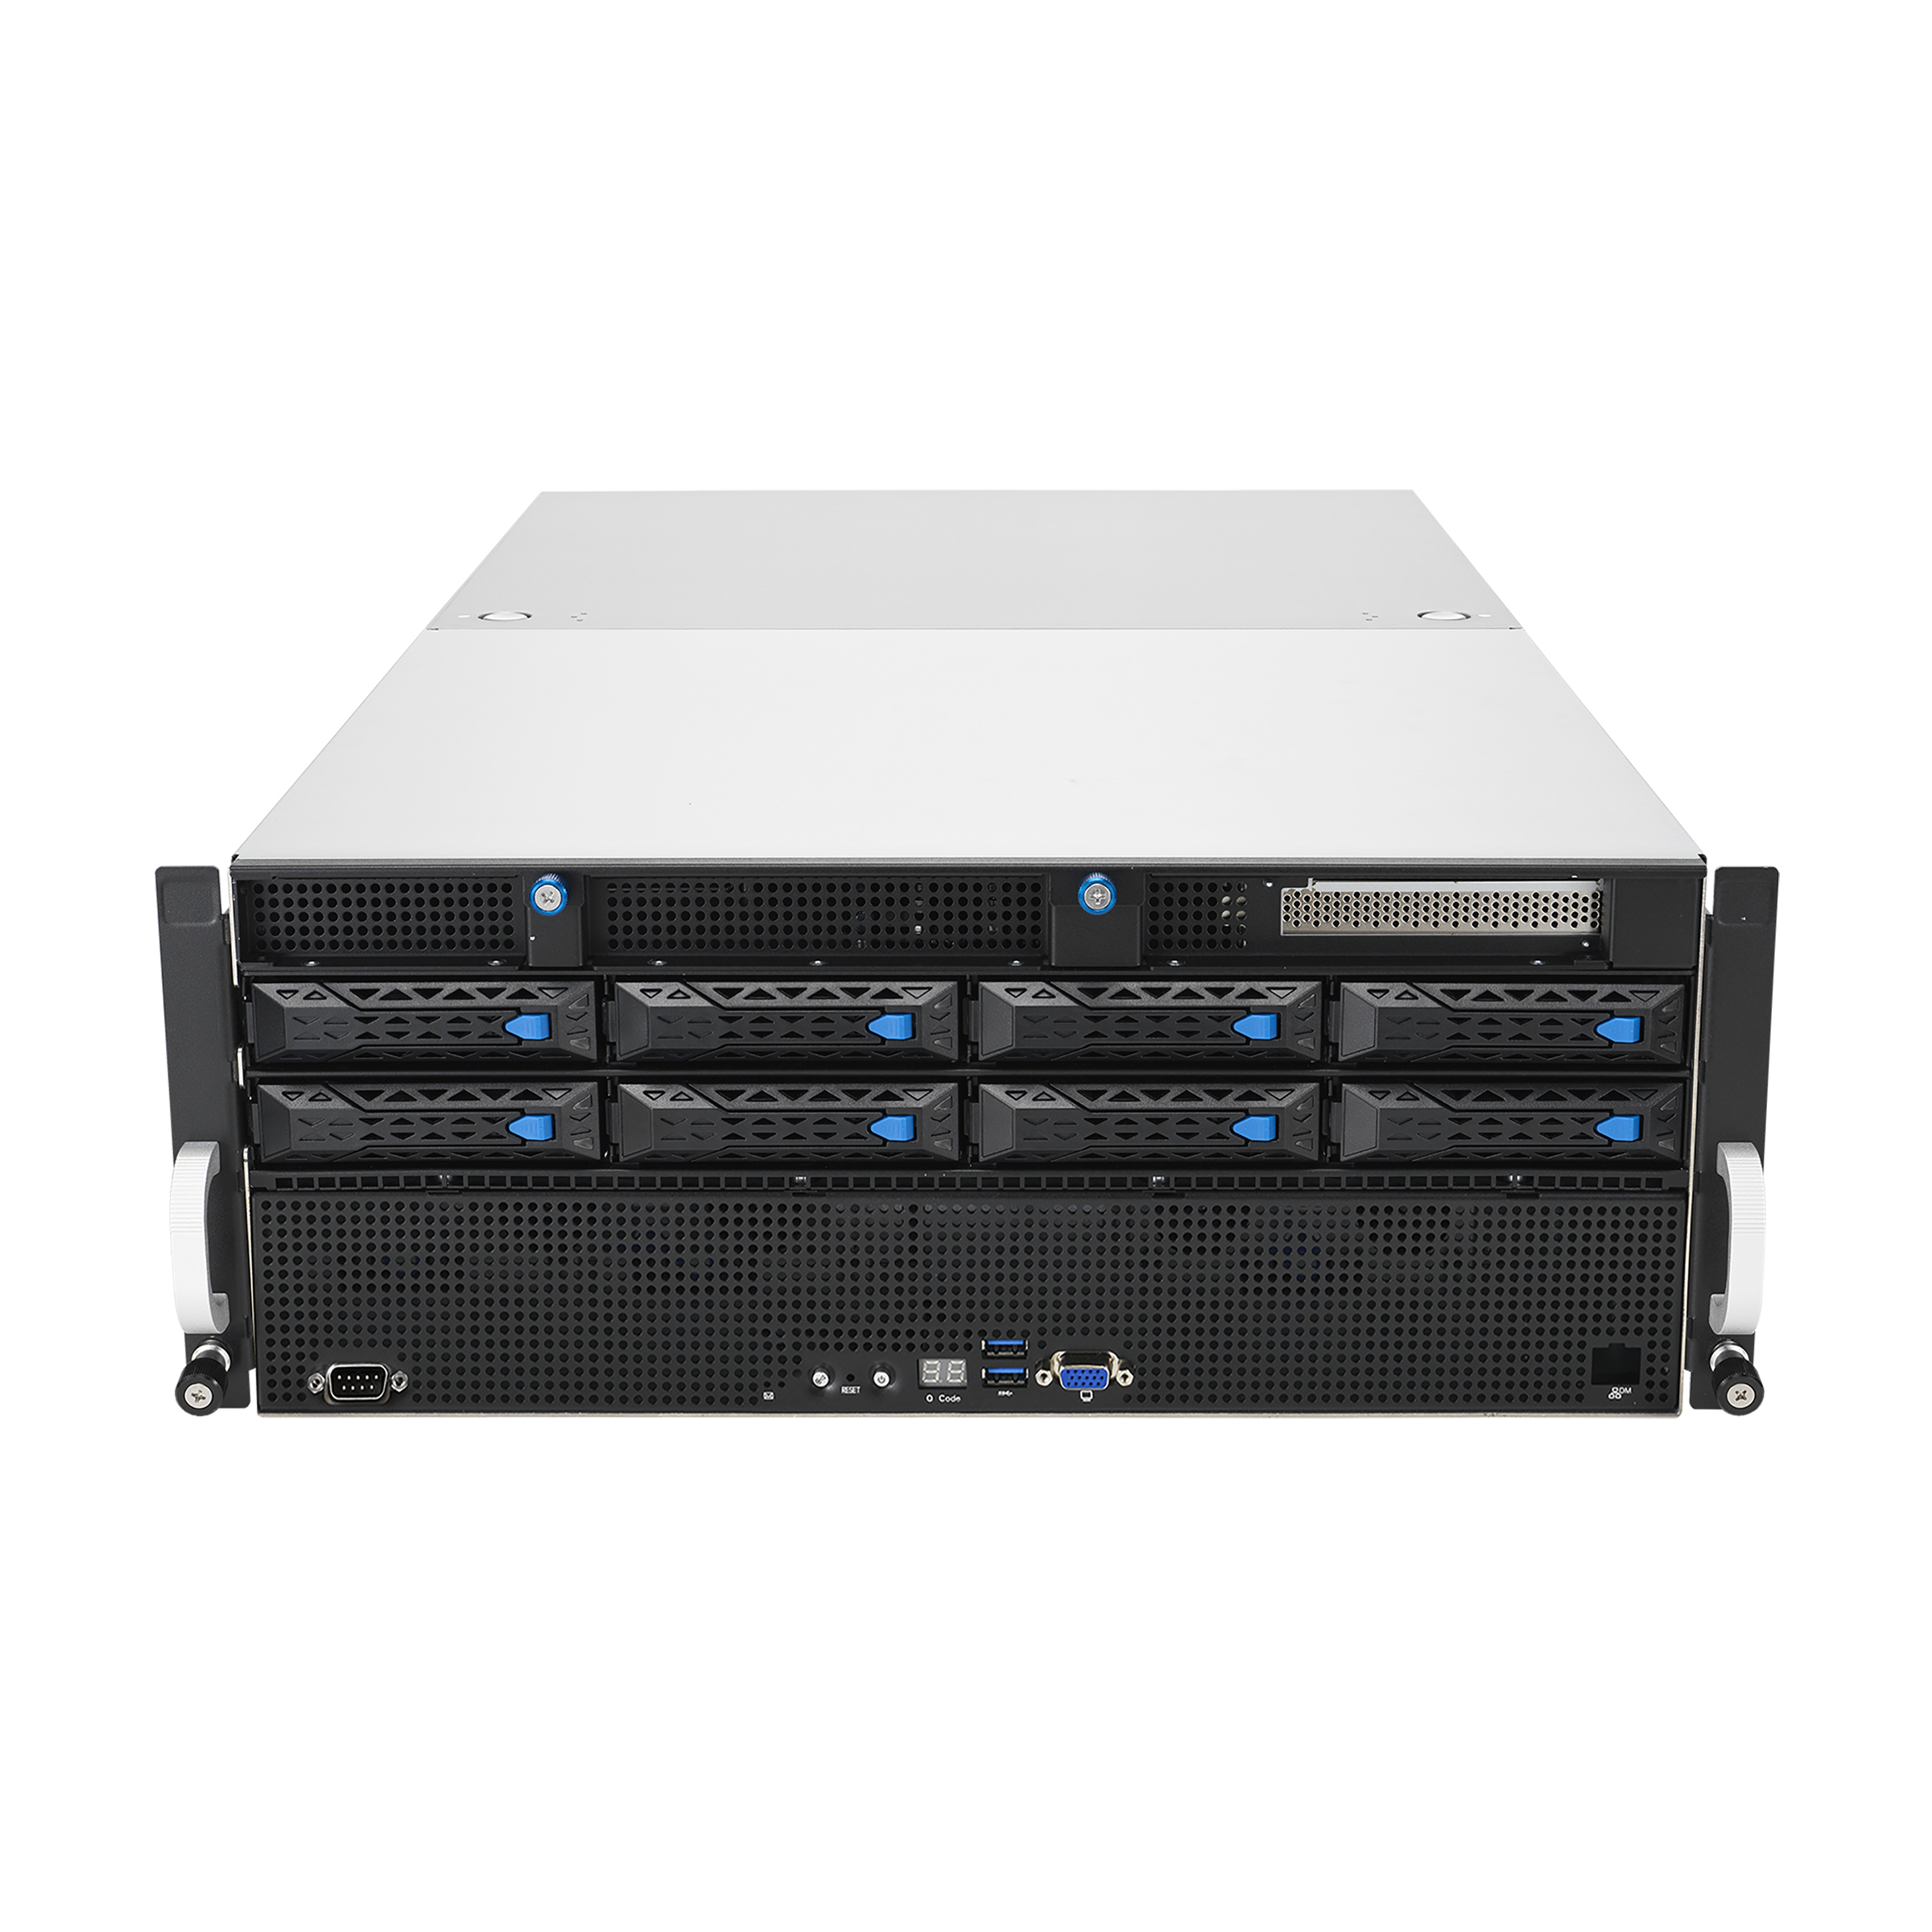 ASUS ESC8000A-E11 - Server - Rack-Montage - 4U - zweiweg - keine CPU - RAM 0 GB - SATA/PCI Express - Hot-Swap 6.4 cm, 8.9 cm (2.5", 3.5")